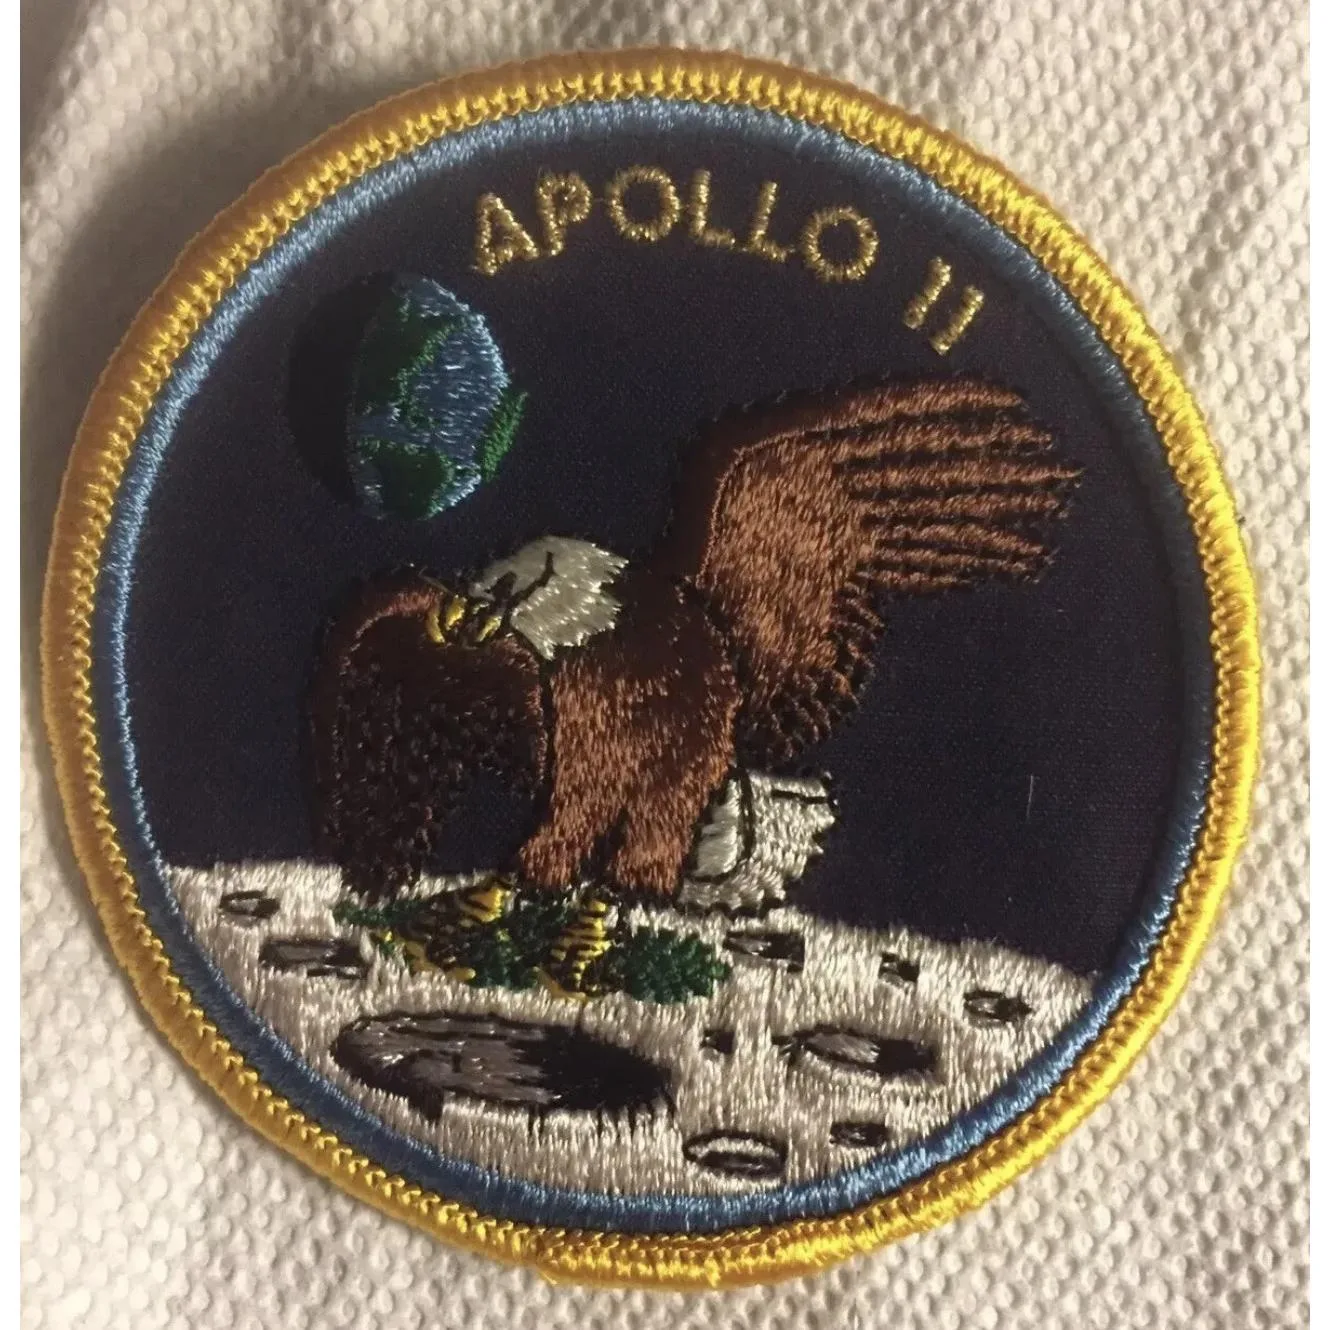 Apollo 11 authentic 1969 patch Prehistoric Online